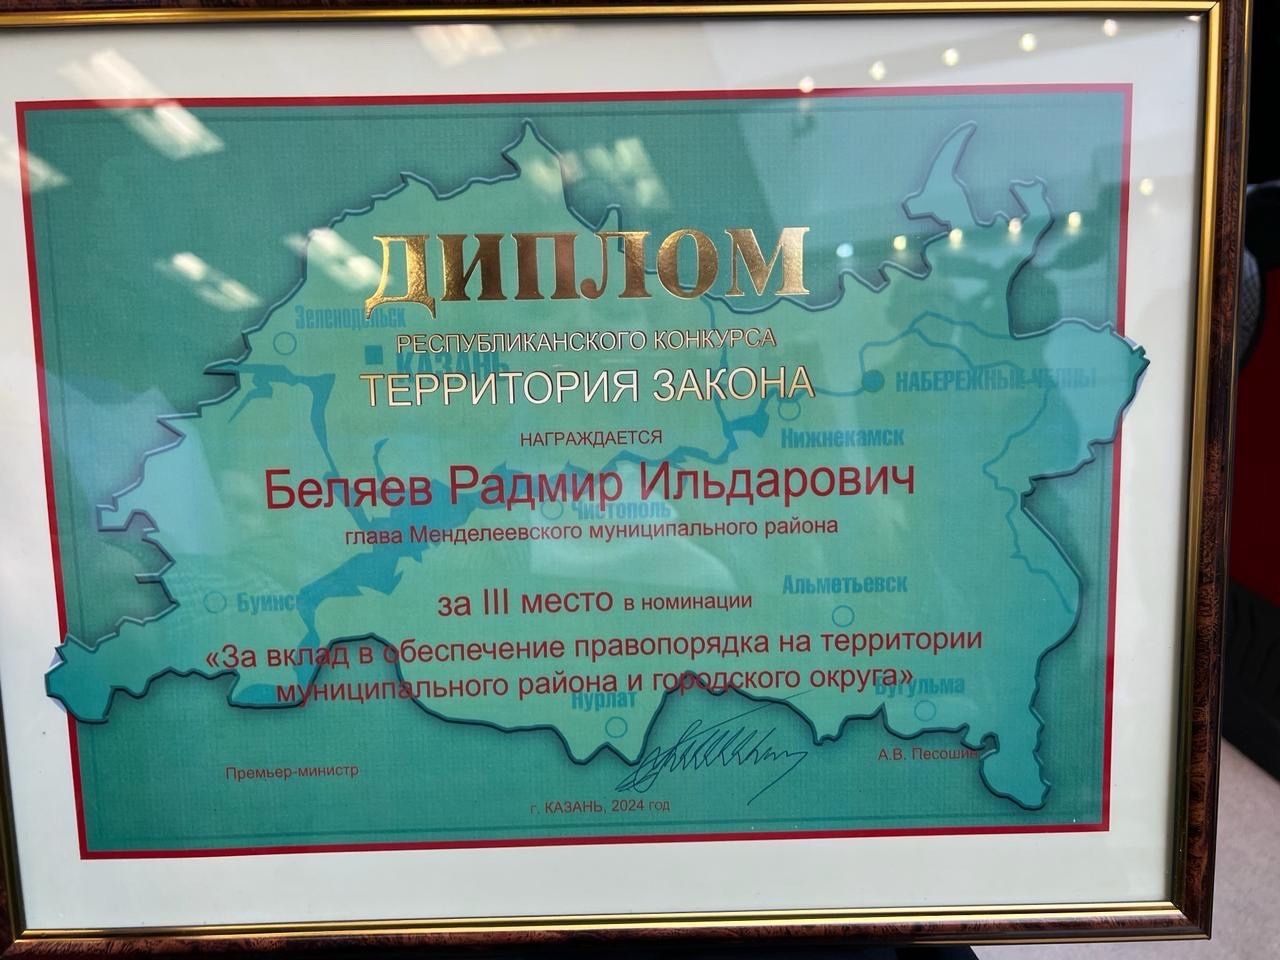 Менделеевск занял третье место по обеспечению правопорядка в республиканском конкурсе «Территория закона»